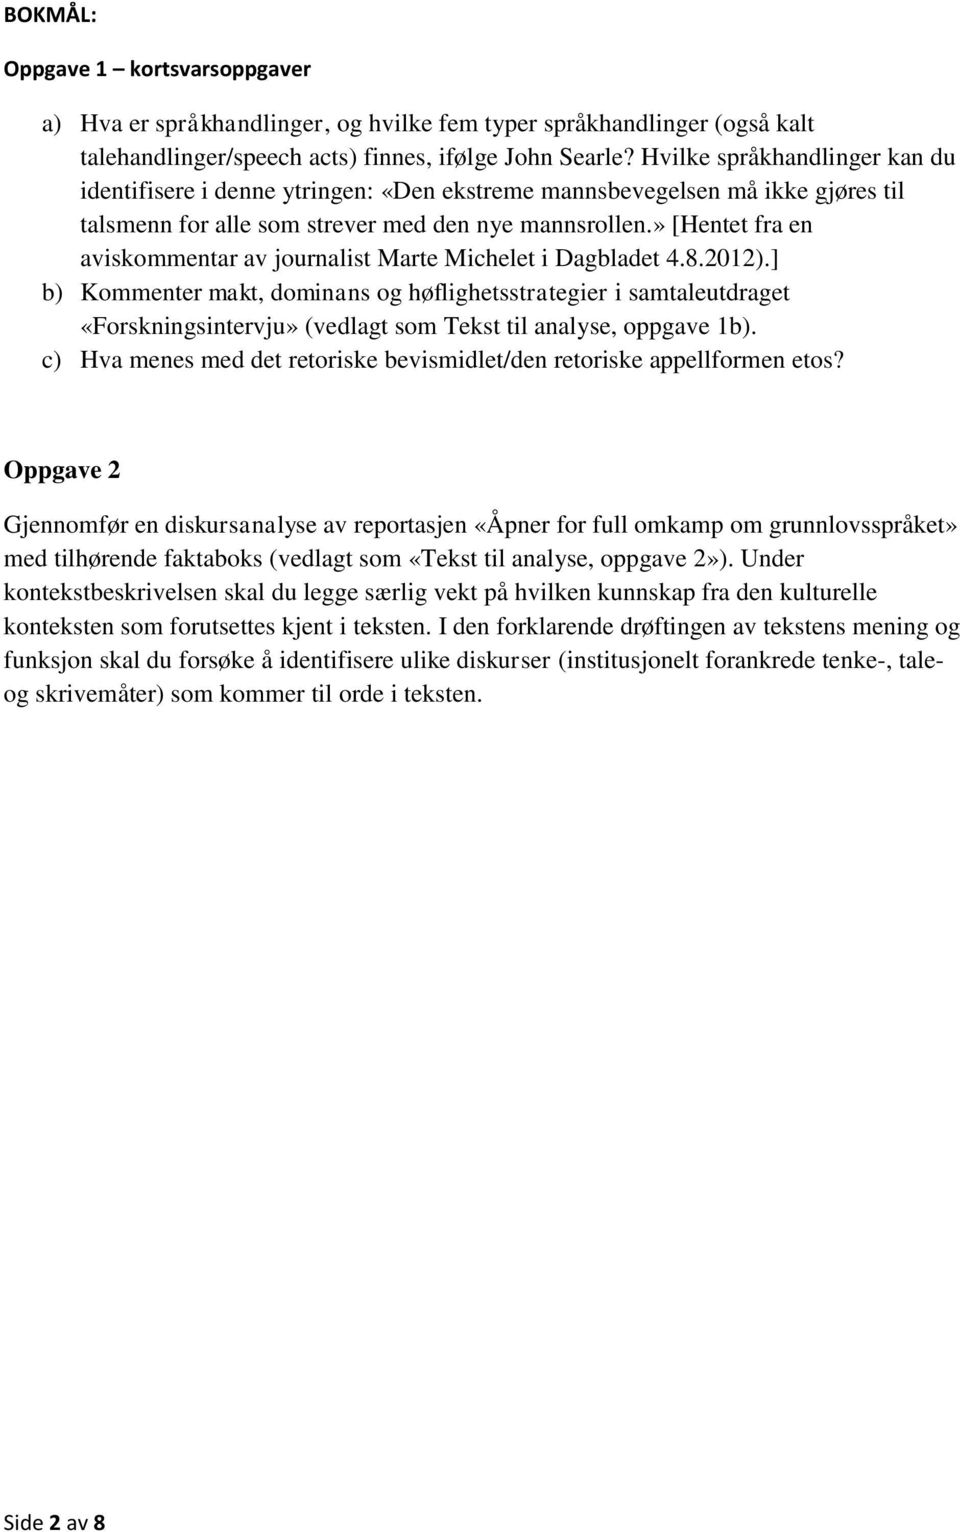 » [Hentet fra en aviskommentar av journalist Marte Michelet i Dagbladet 4.8.2012).